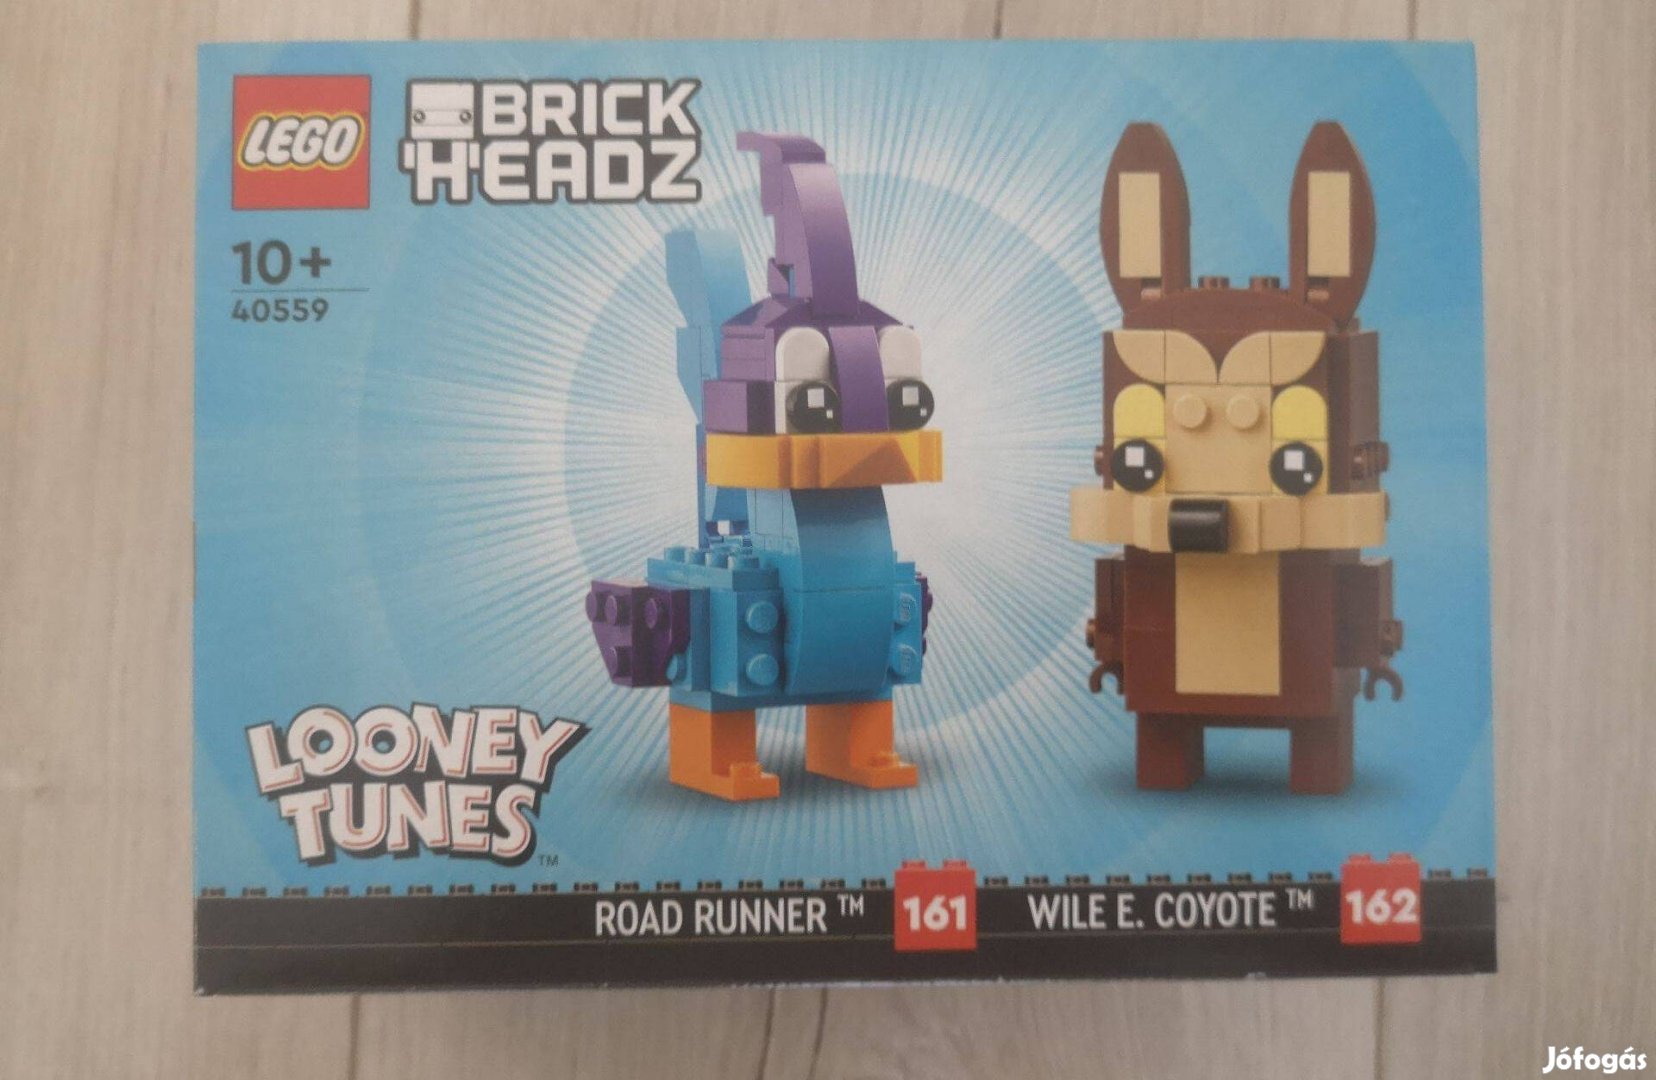 LEGO Brickheadz - Gyalogkakukk és Vili a prérifarkas (40559)